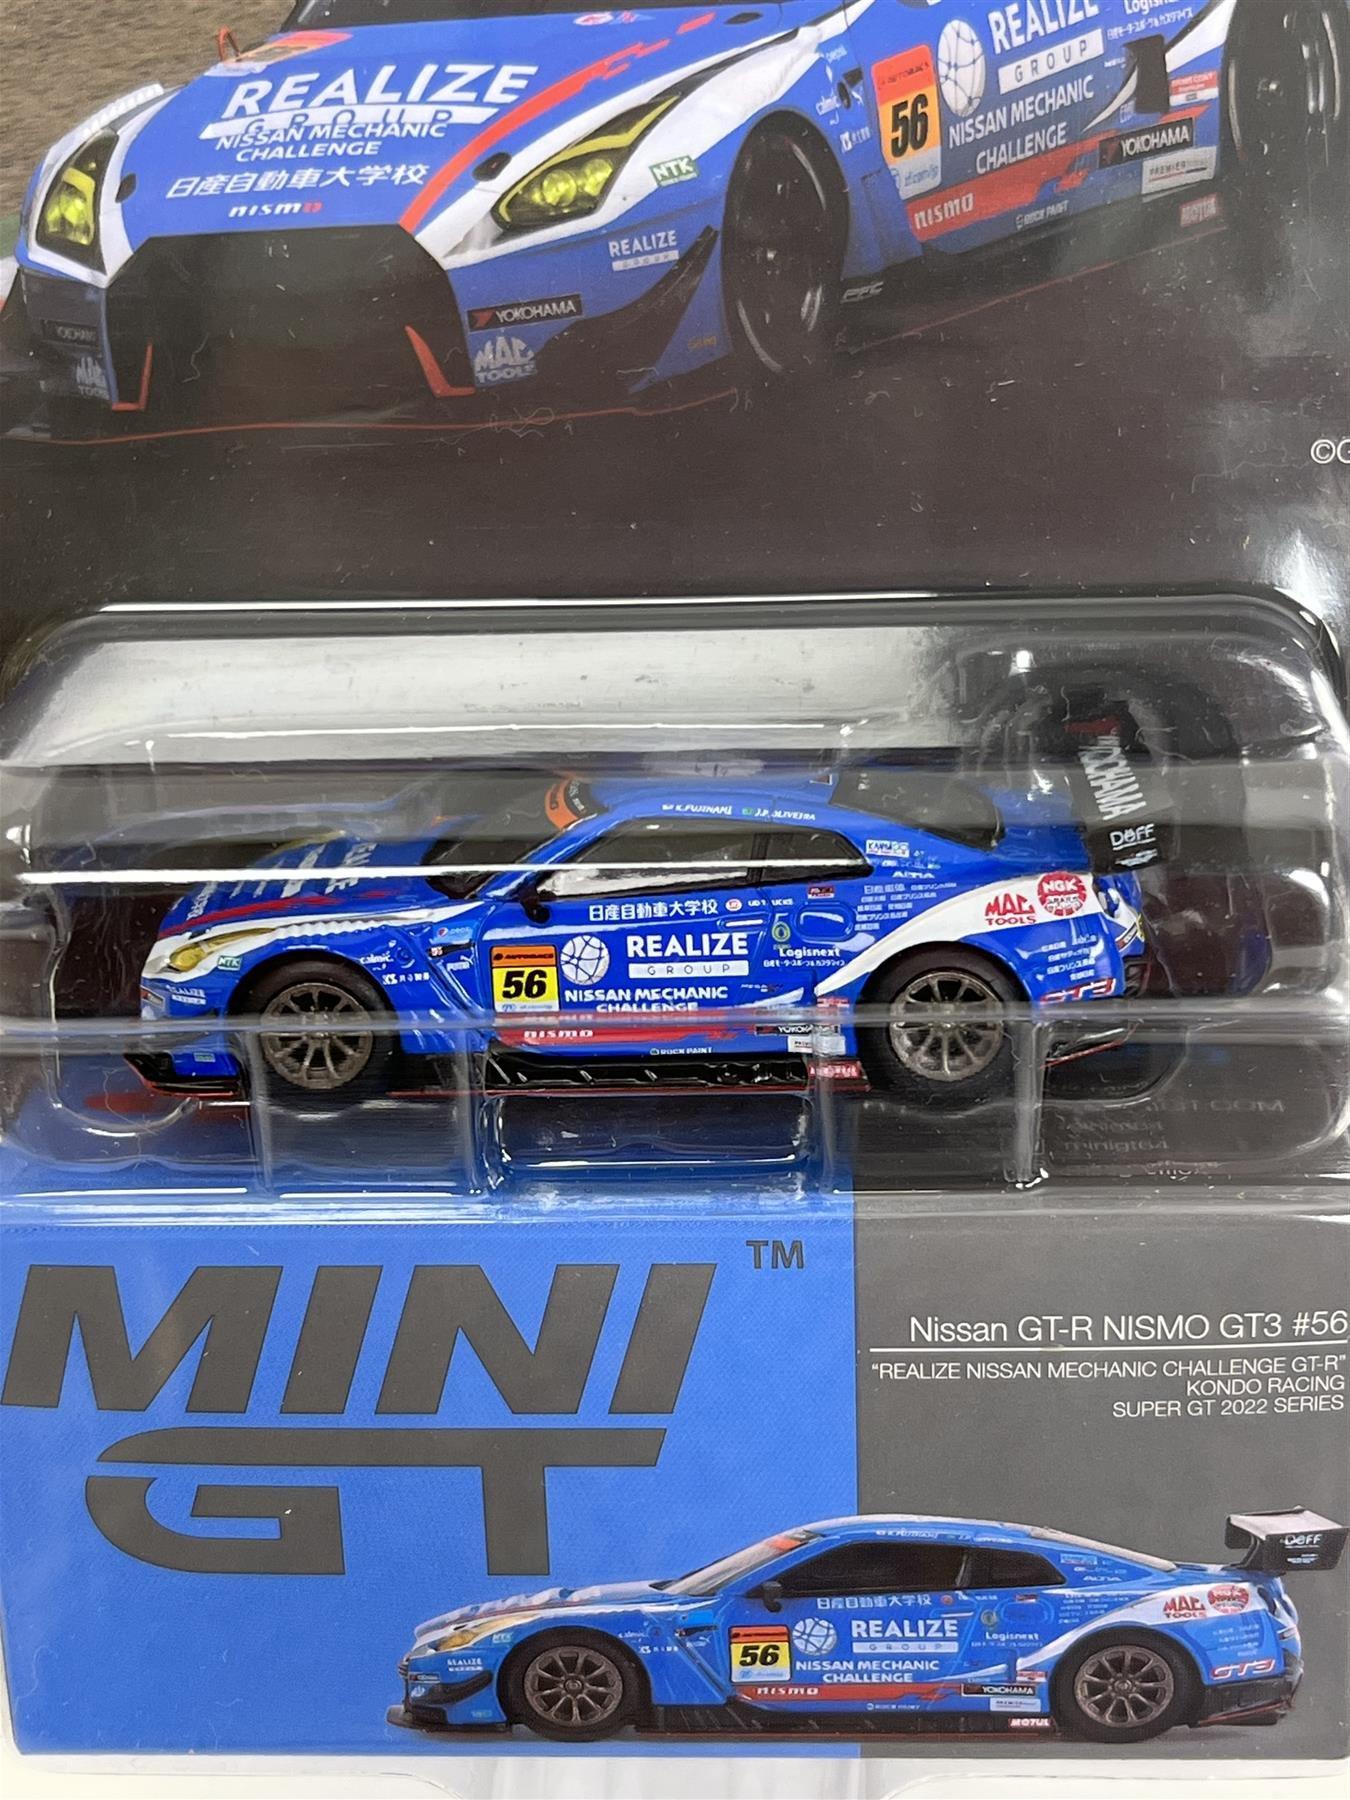 Mini Gt Nissan Gt-r Nismo Gt3 #56 Super Gt '22 Series #486 Color Azul